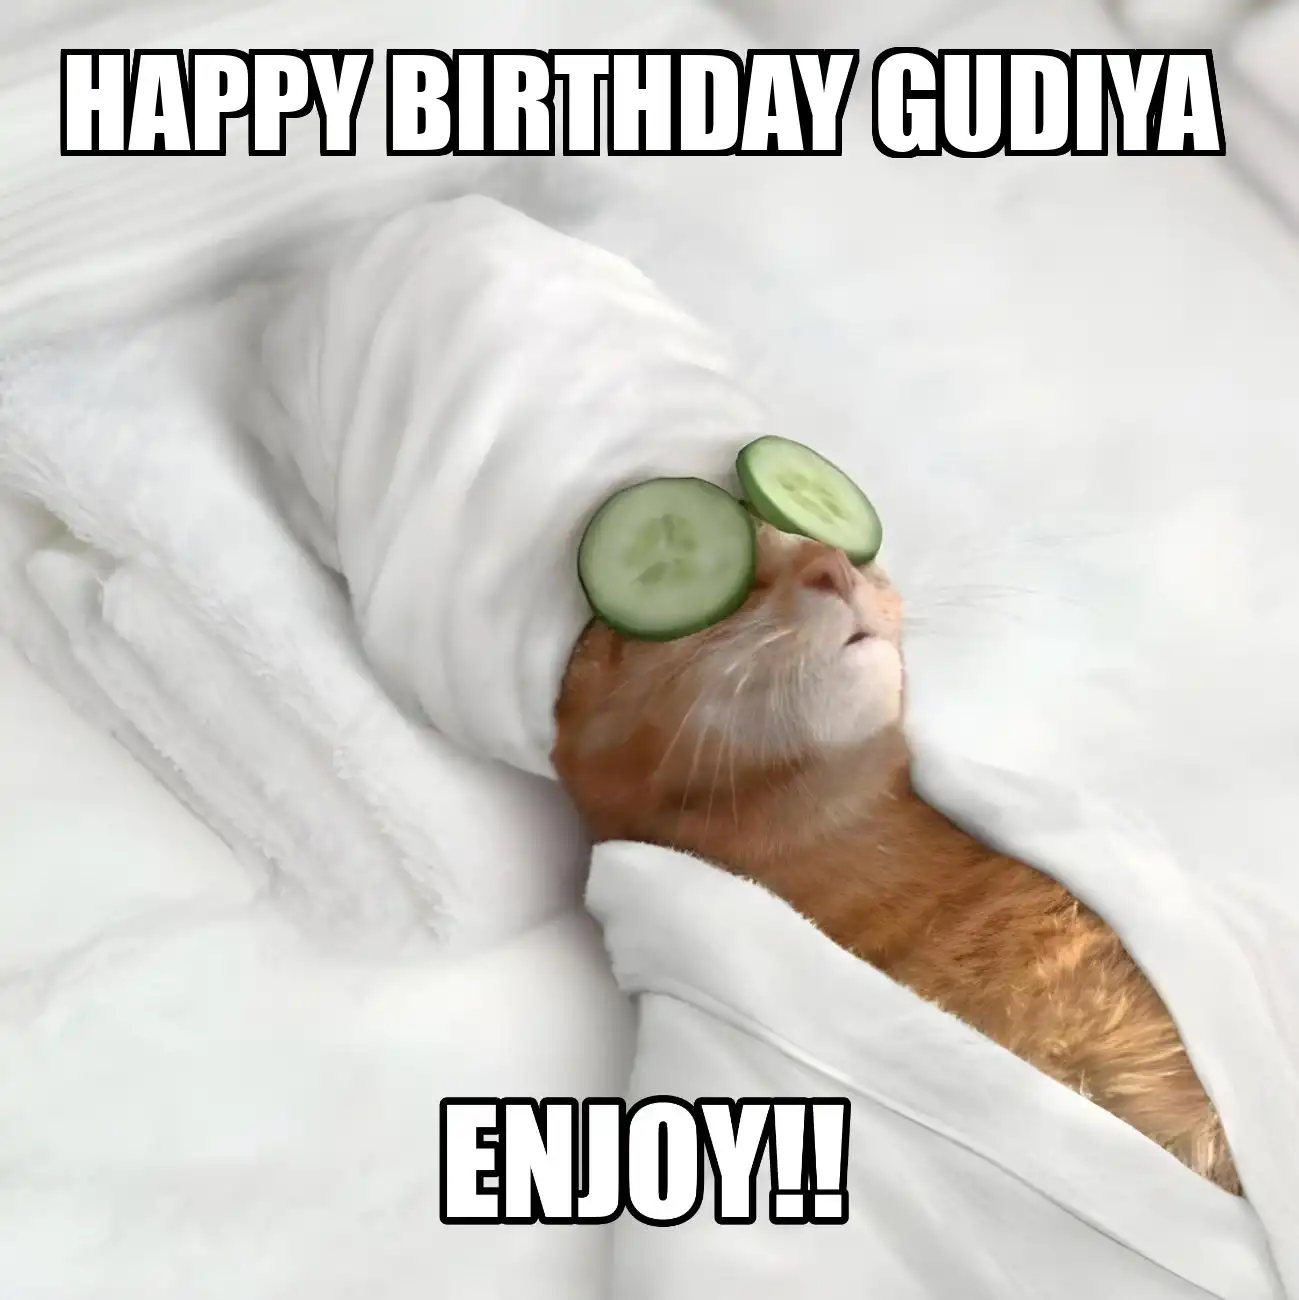 Happy Birthday Gudiya Enjoy Cat Meme